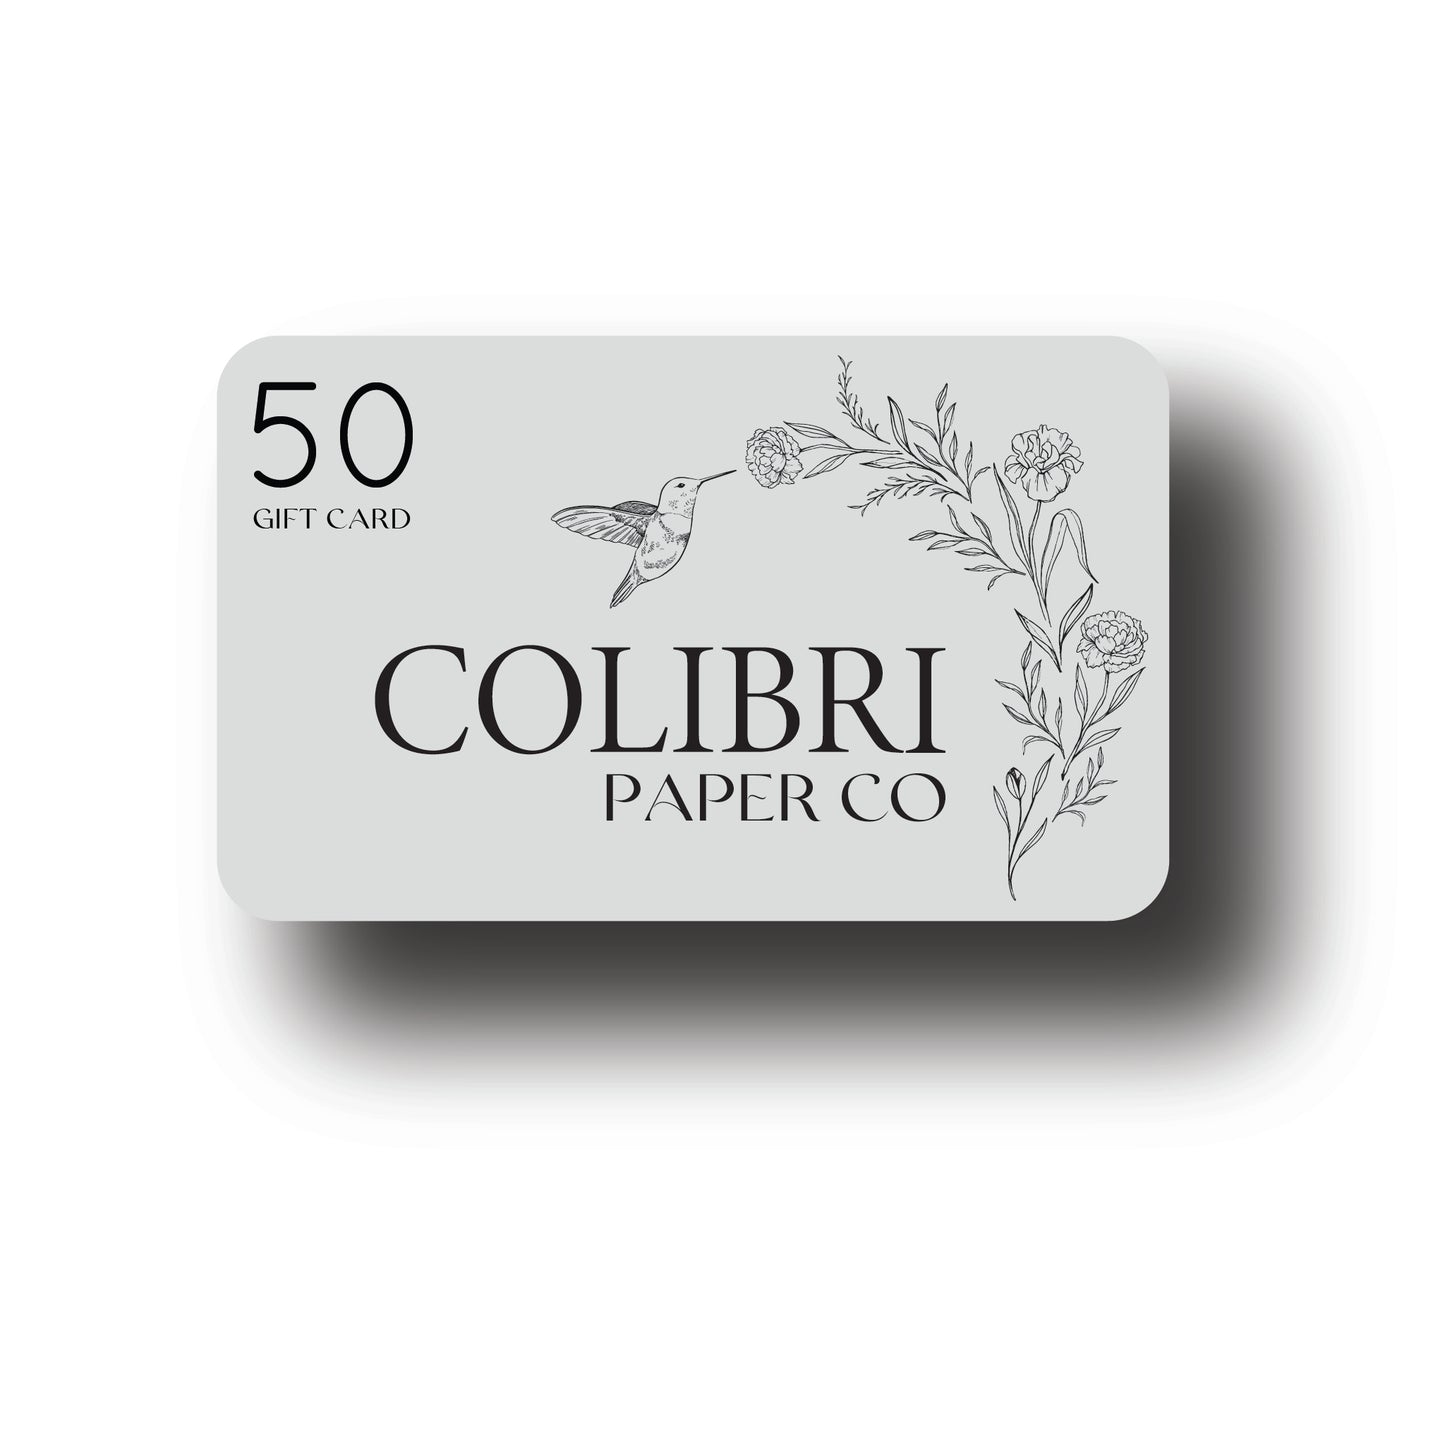 Colibri Paper Co Gift Card